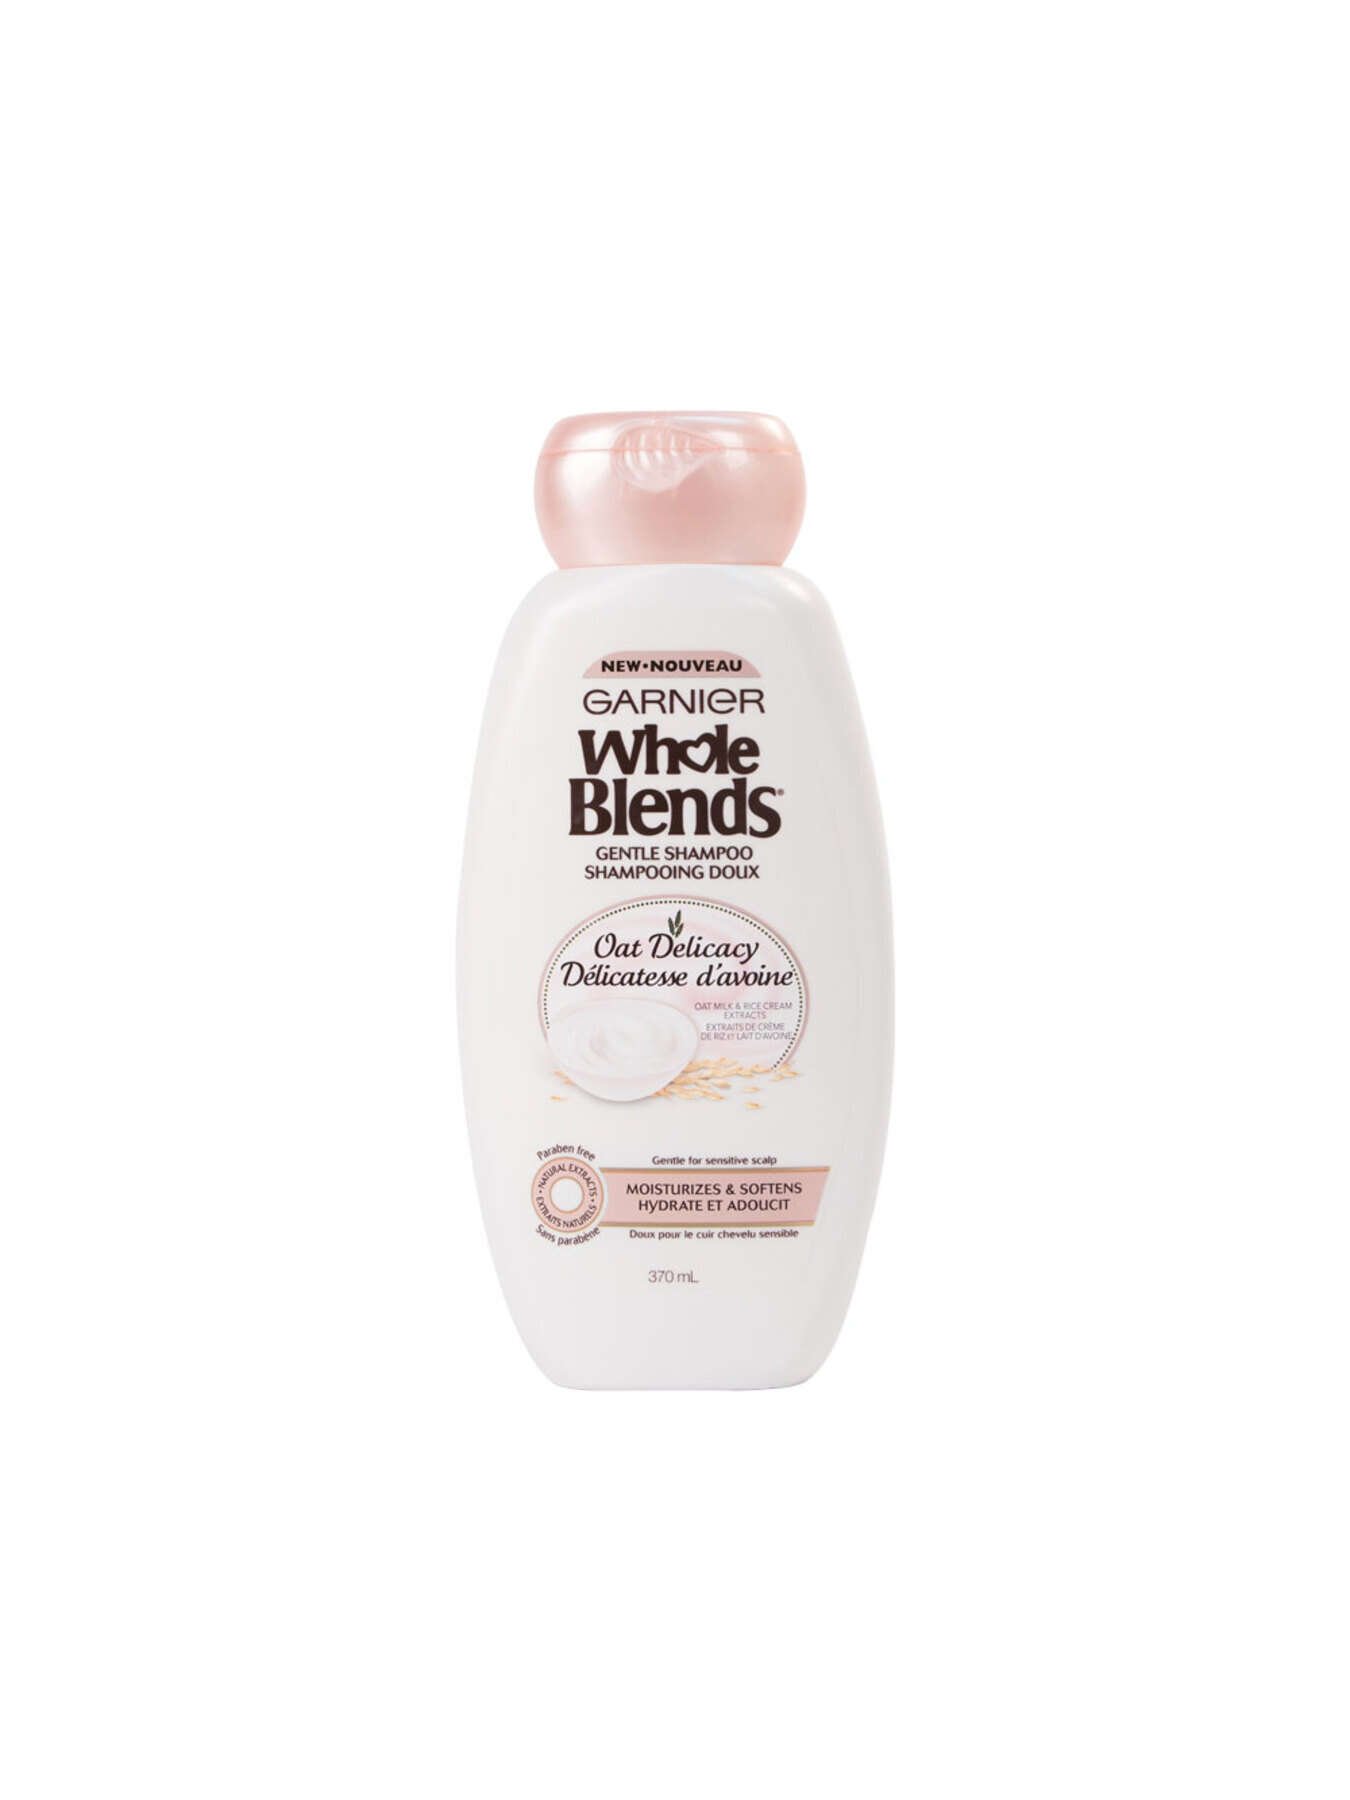 garnier shampoo whole blends oat delicacy gentle shampoo 370 ml 603084543311 t1